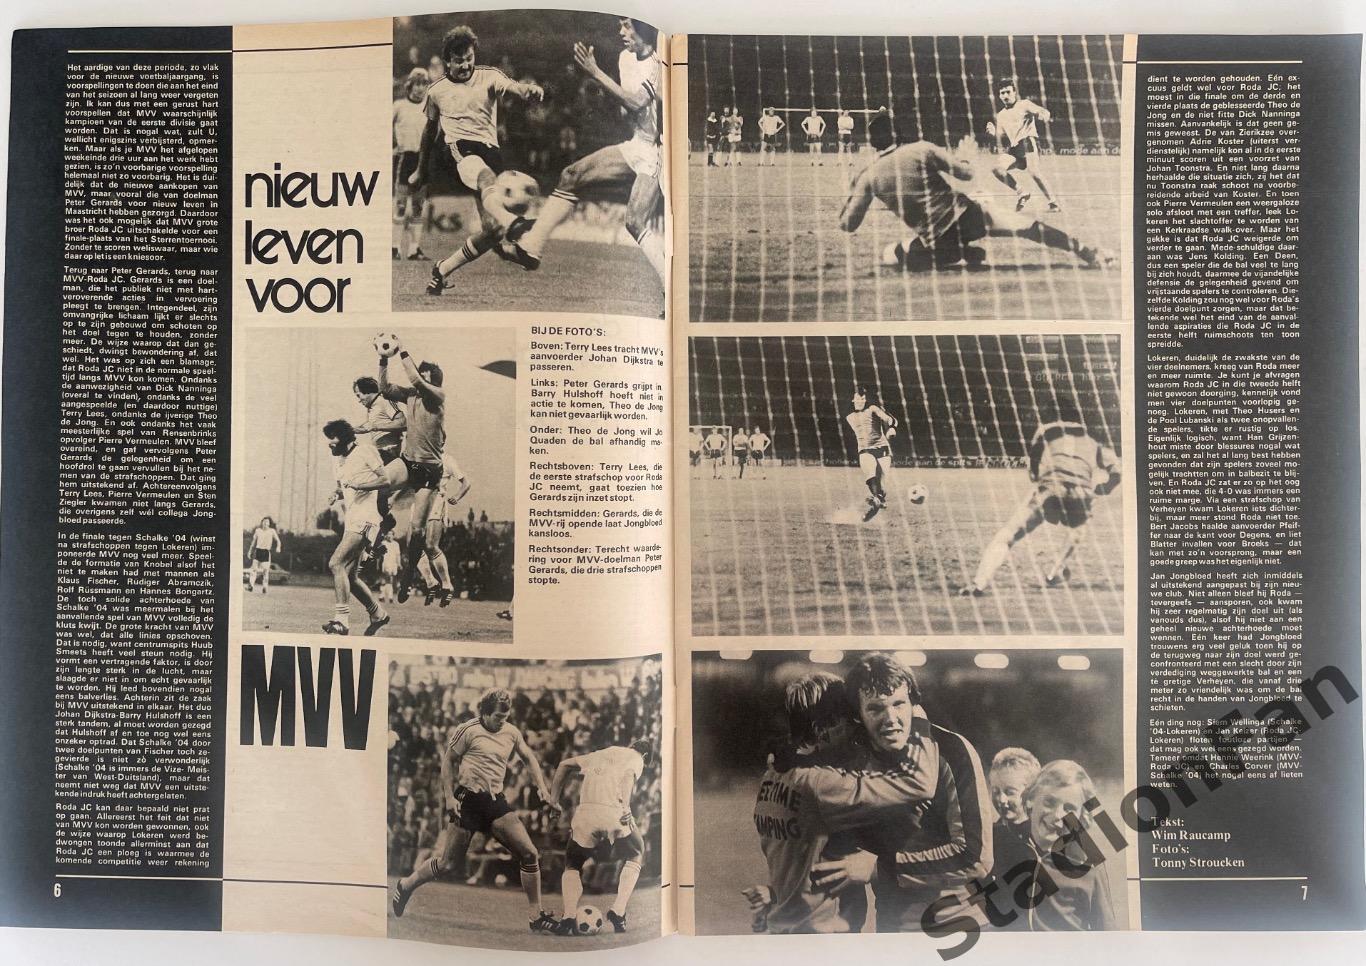 Журнал Voetbal nr.30 - 1977 год. 1